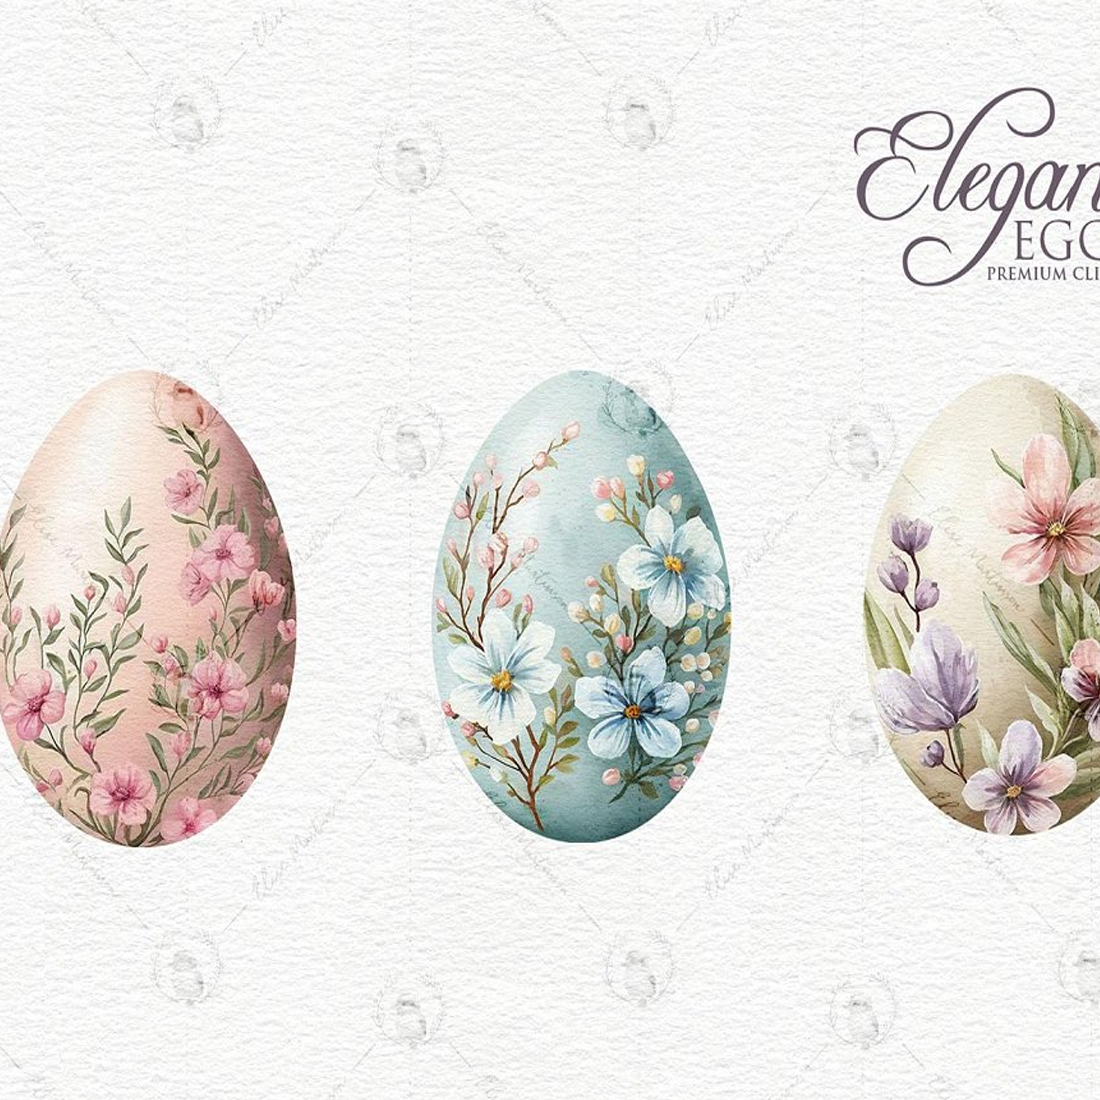 Download Egg Easter Gold Free Transparent Image HQ HQ PNG Image